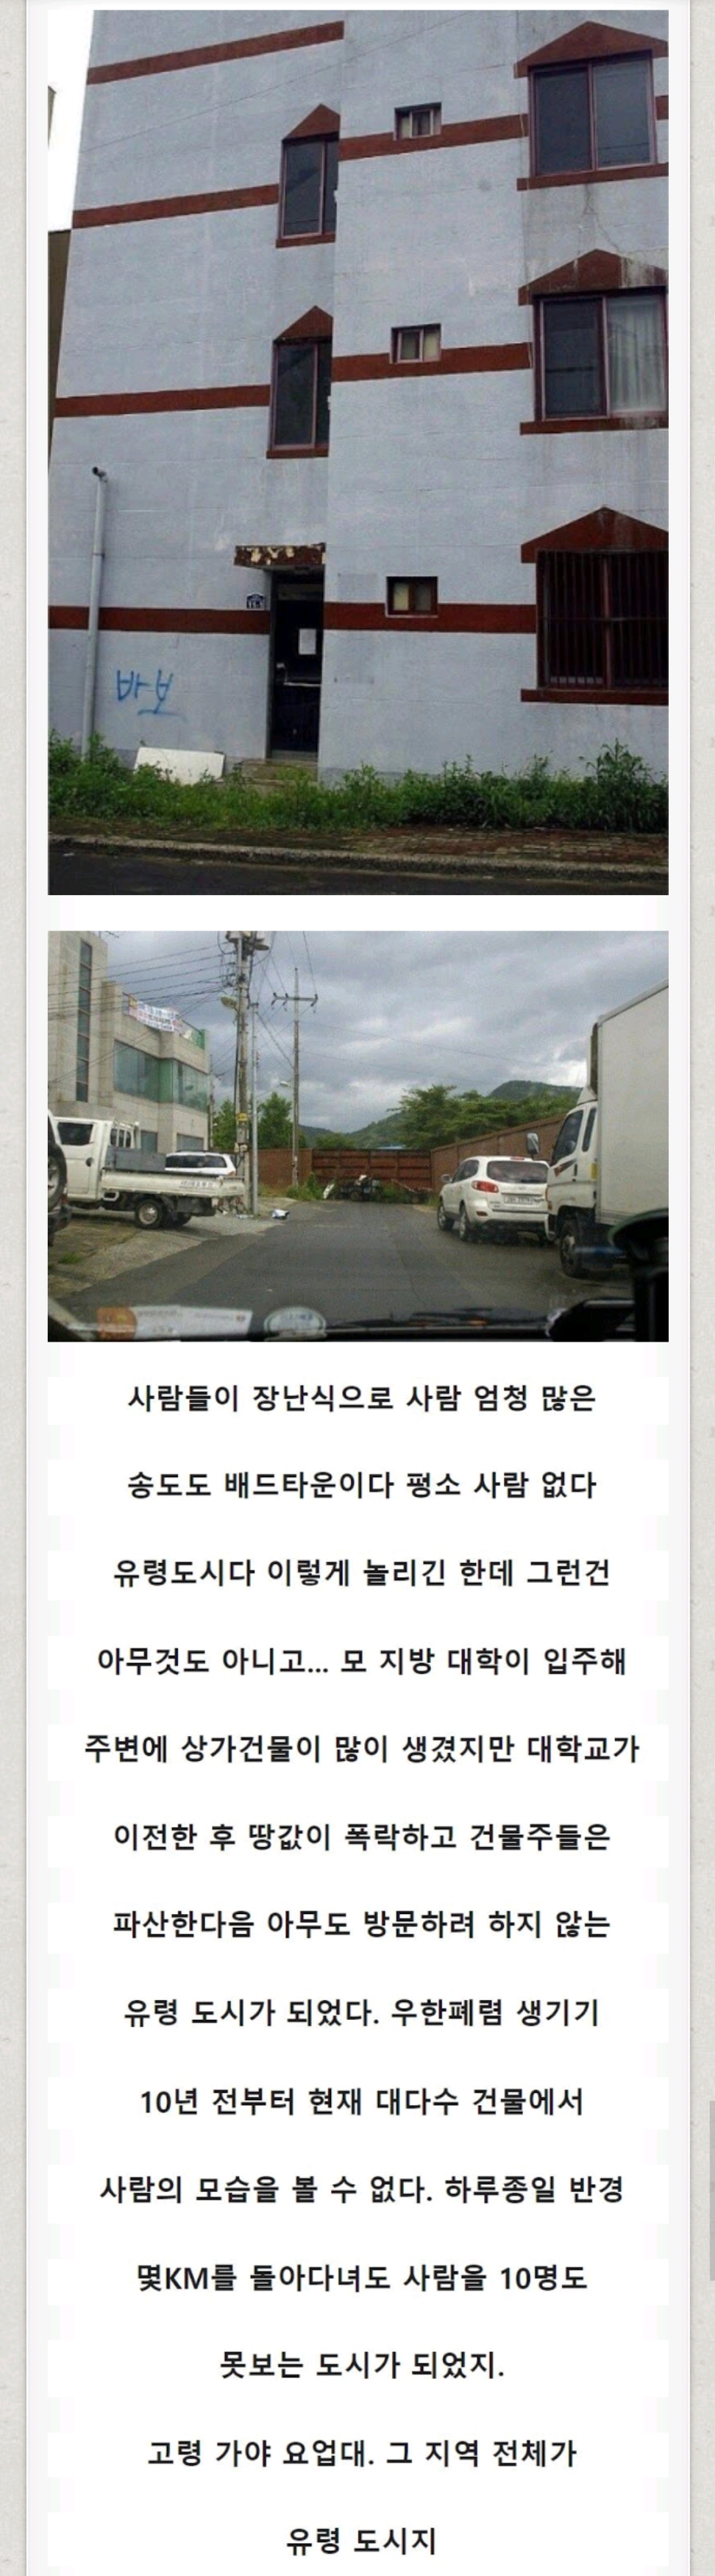 한국 사람들도 잘 모르는 한국의 유령도시.jpg